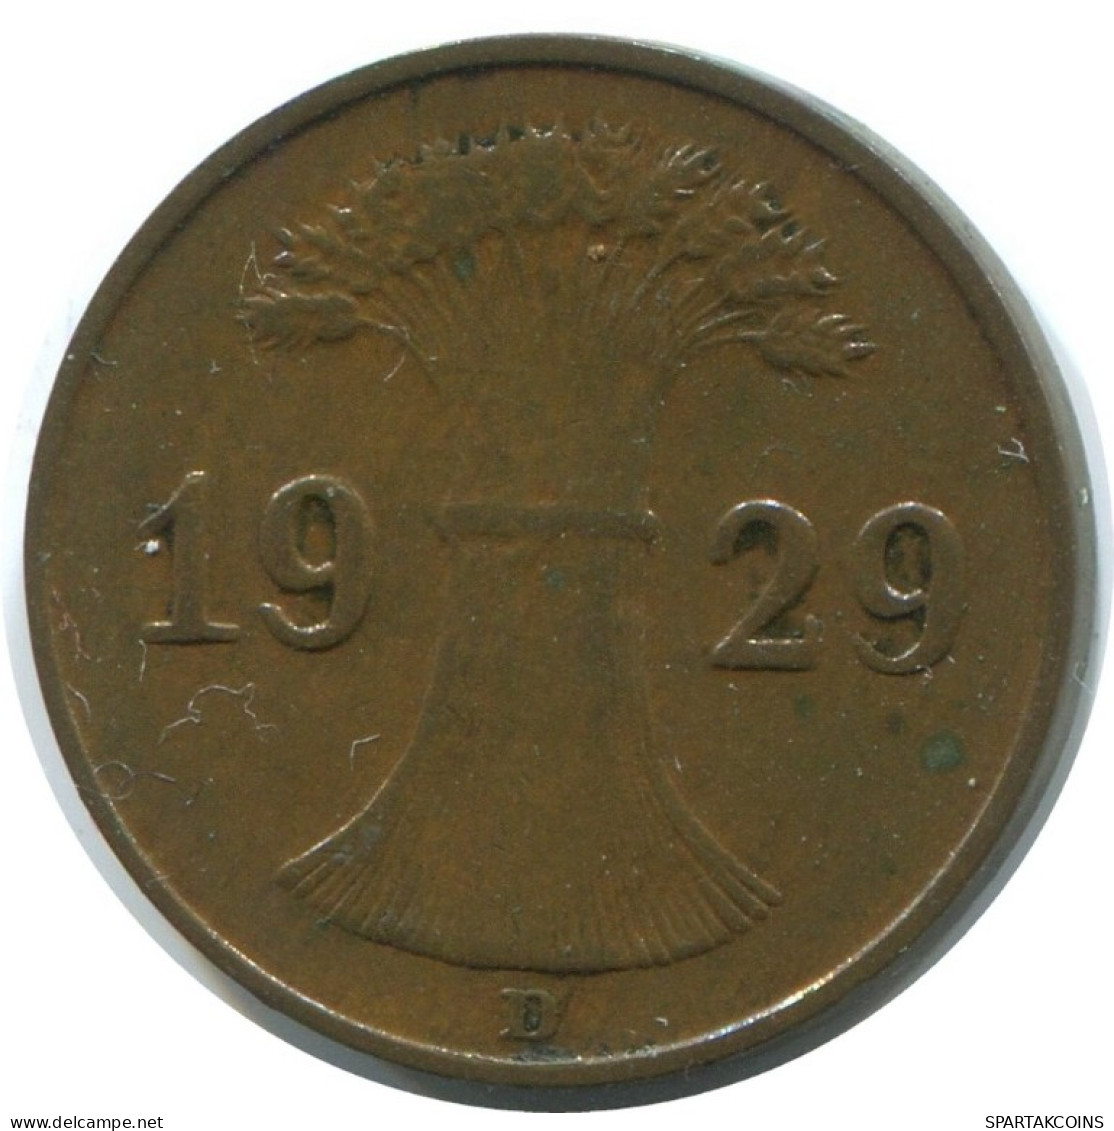 1 REICHSPFENNIG 1929 D GERMANY Coin #AE196.U.A - 1 Renten- & 1 Reichspfennig